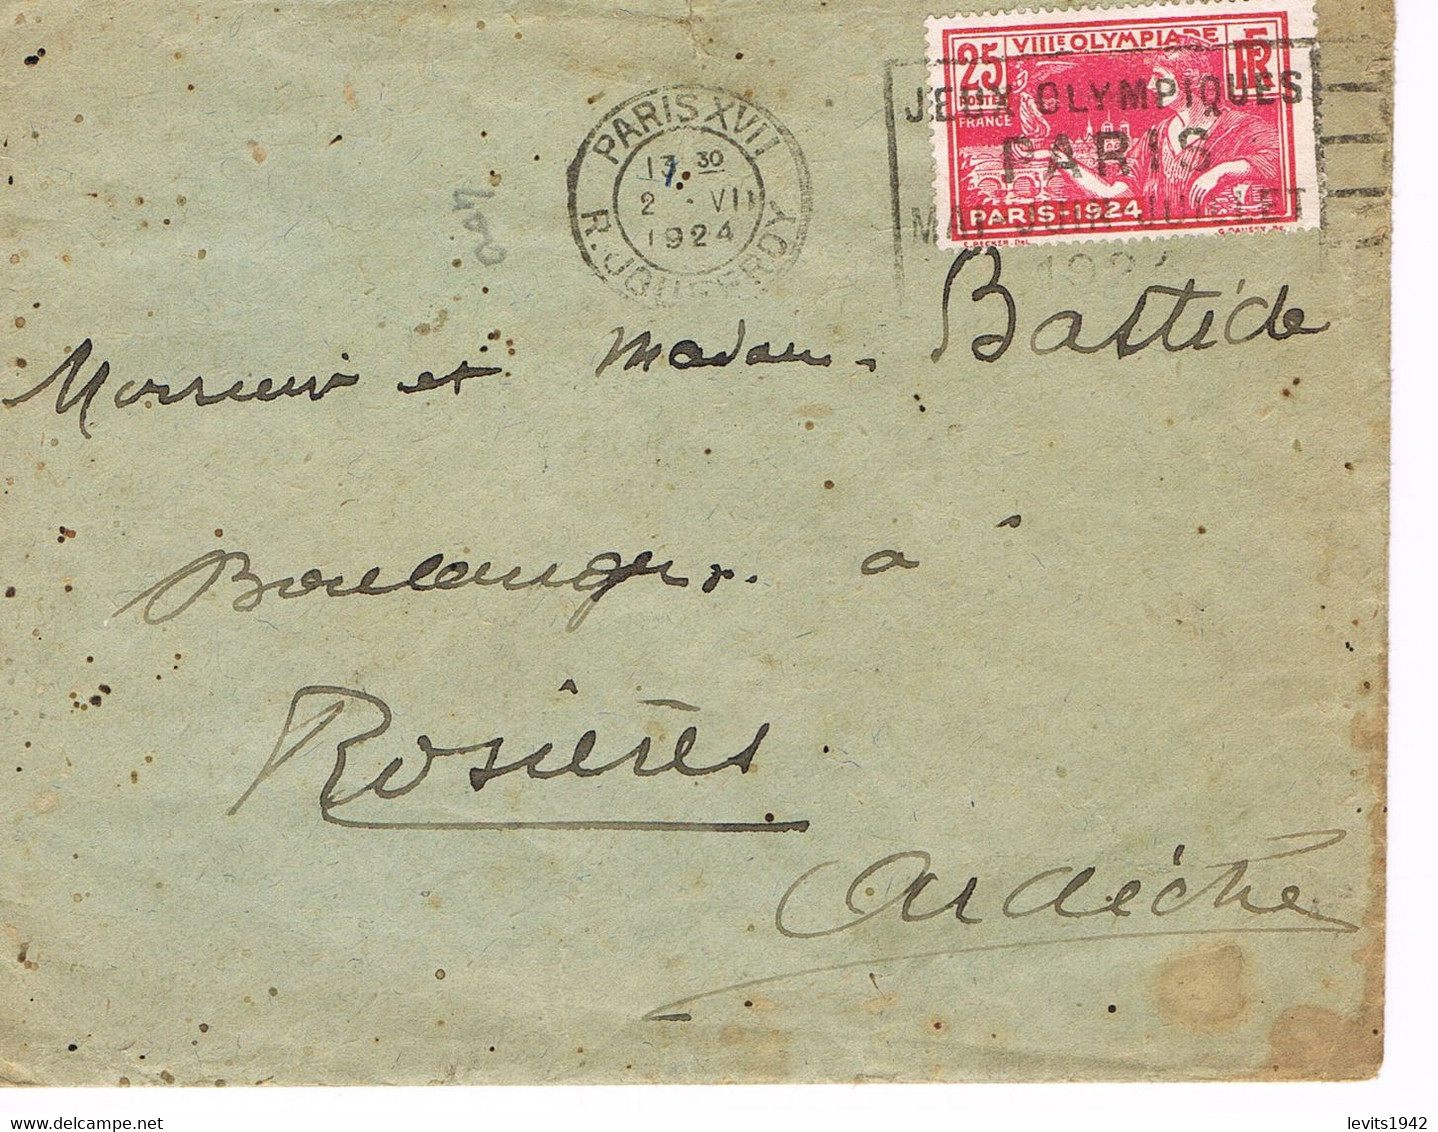 JEUX OLYMPIQUES 1924 -  MARQUE POSTALE - TIMBRE CONCORDANT - 02-07 - JOUR DE COMPETITION - ESCRIME - TIR - - Verano 1924: Paris